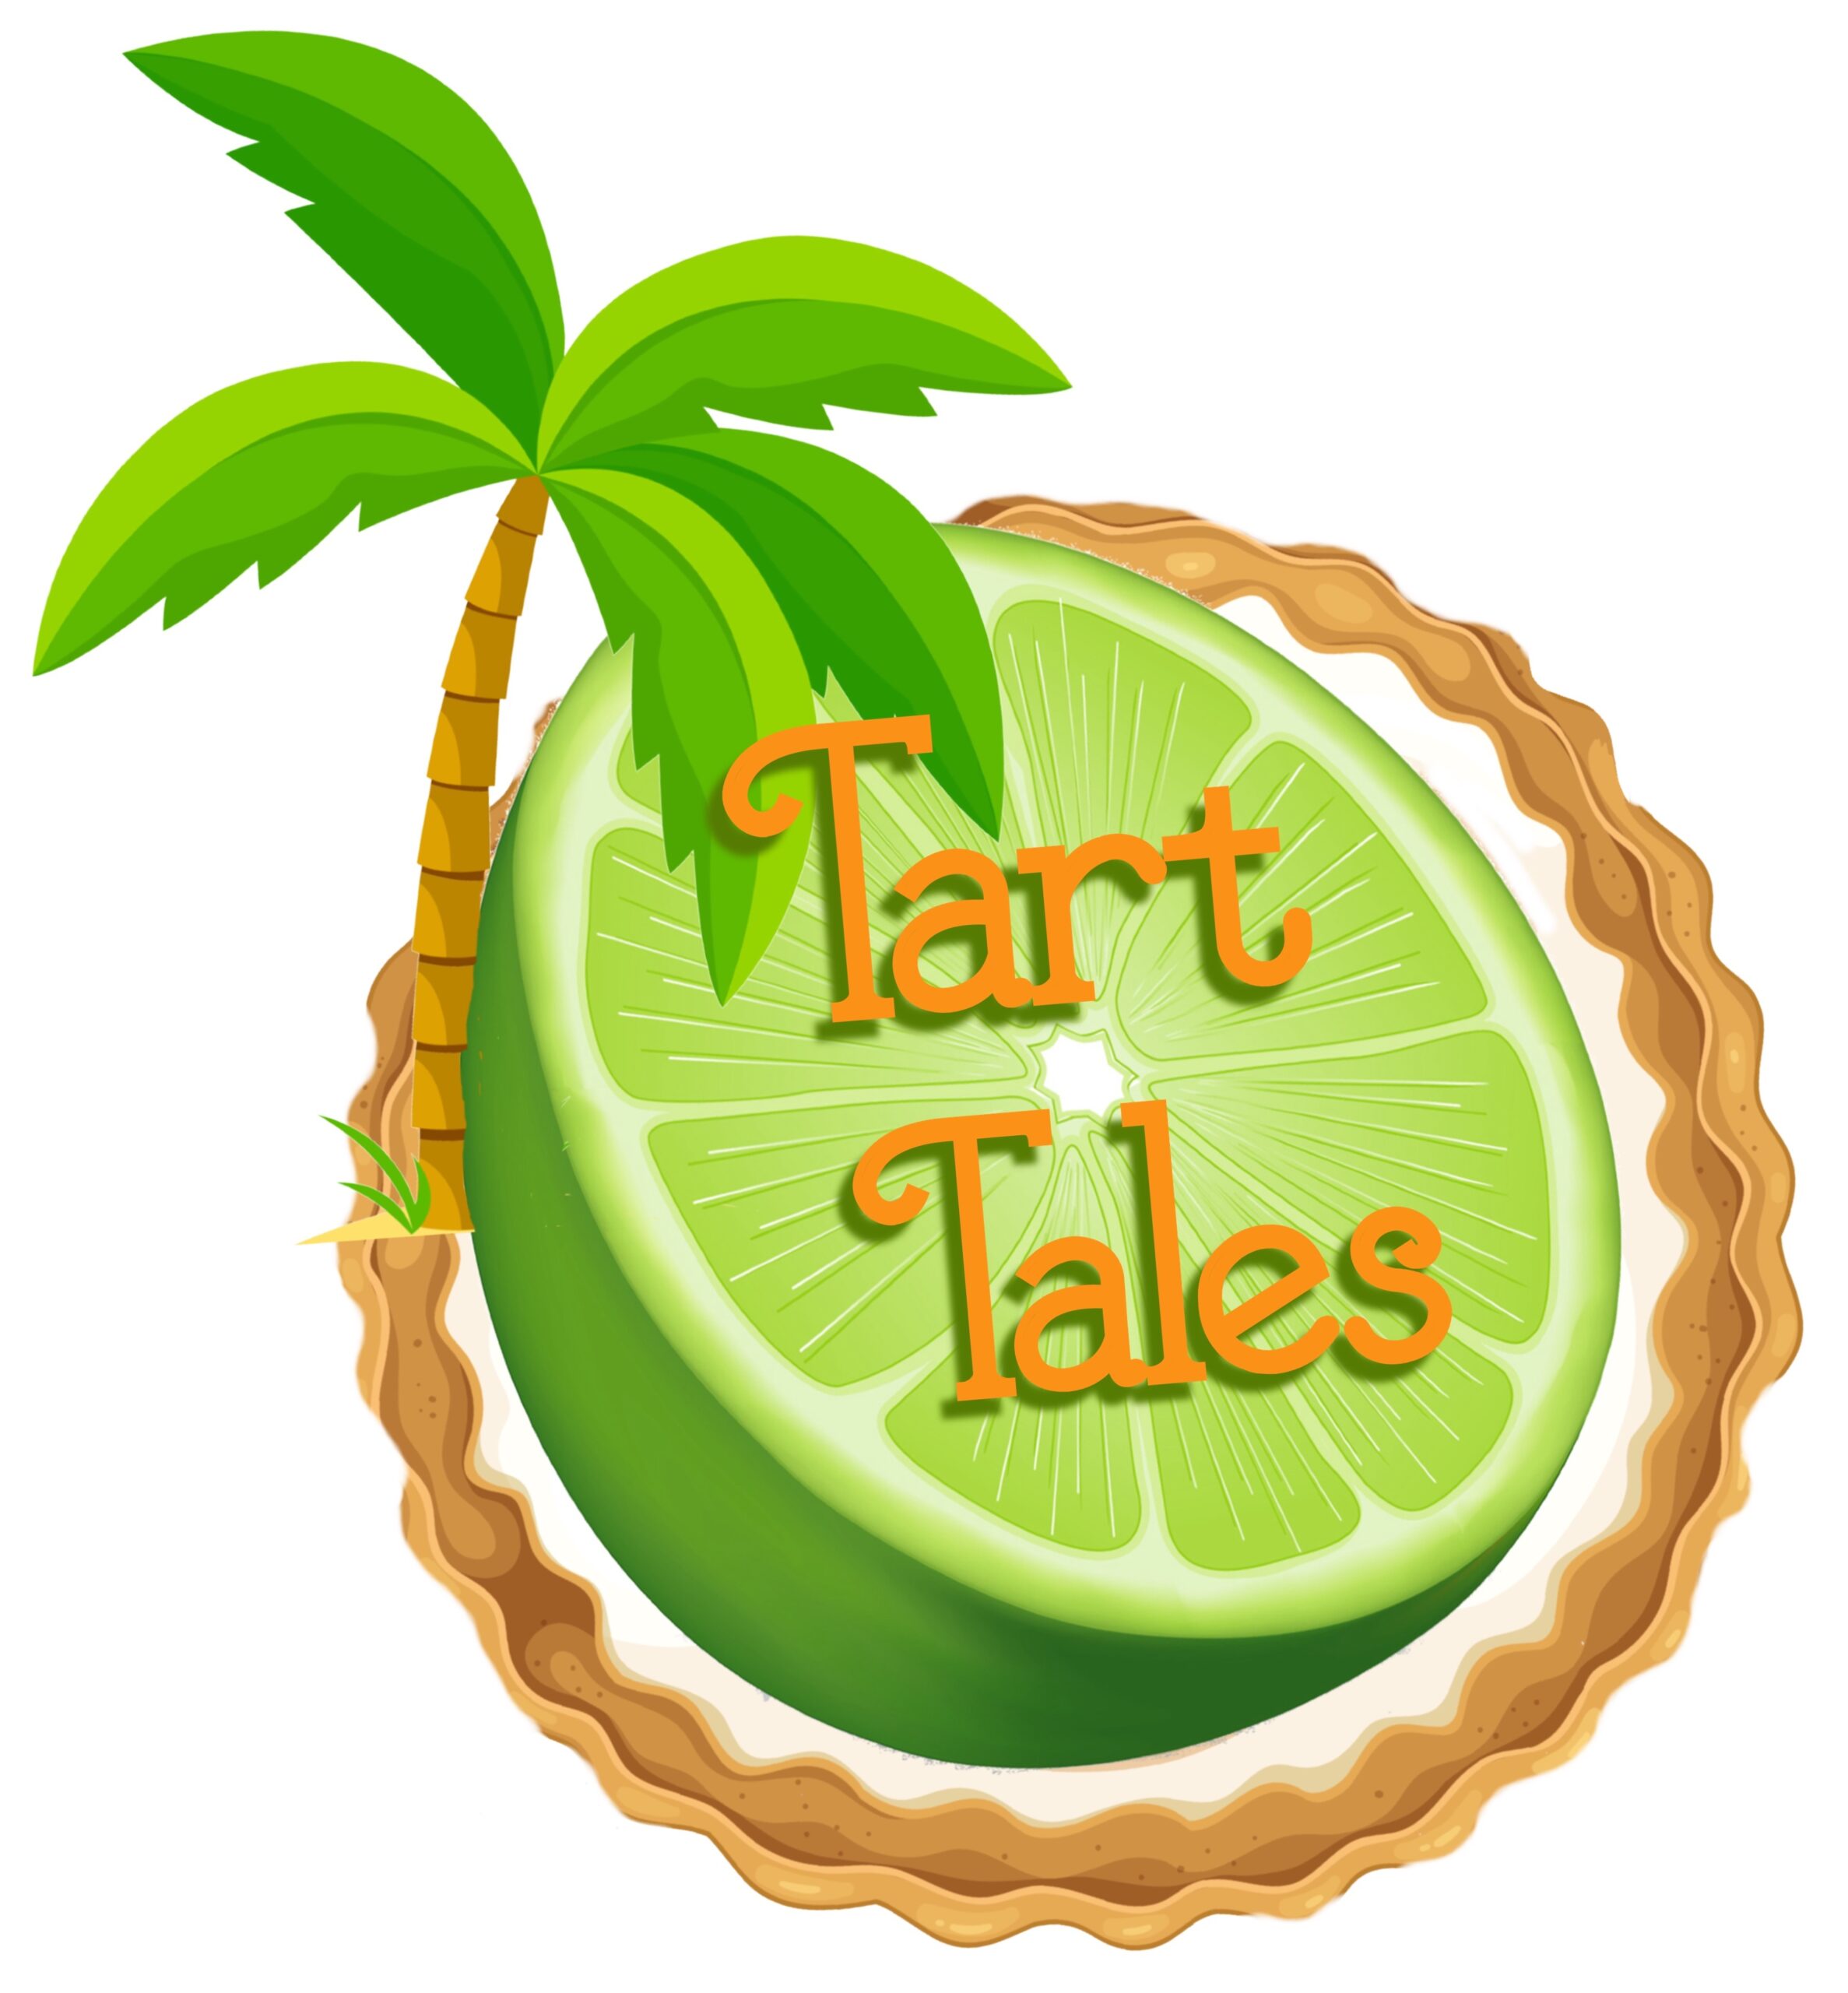 Tart Tales Key Lime Pie Walking Tours of Key West Logo